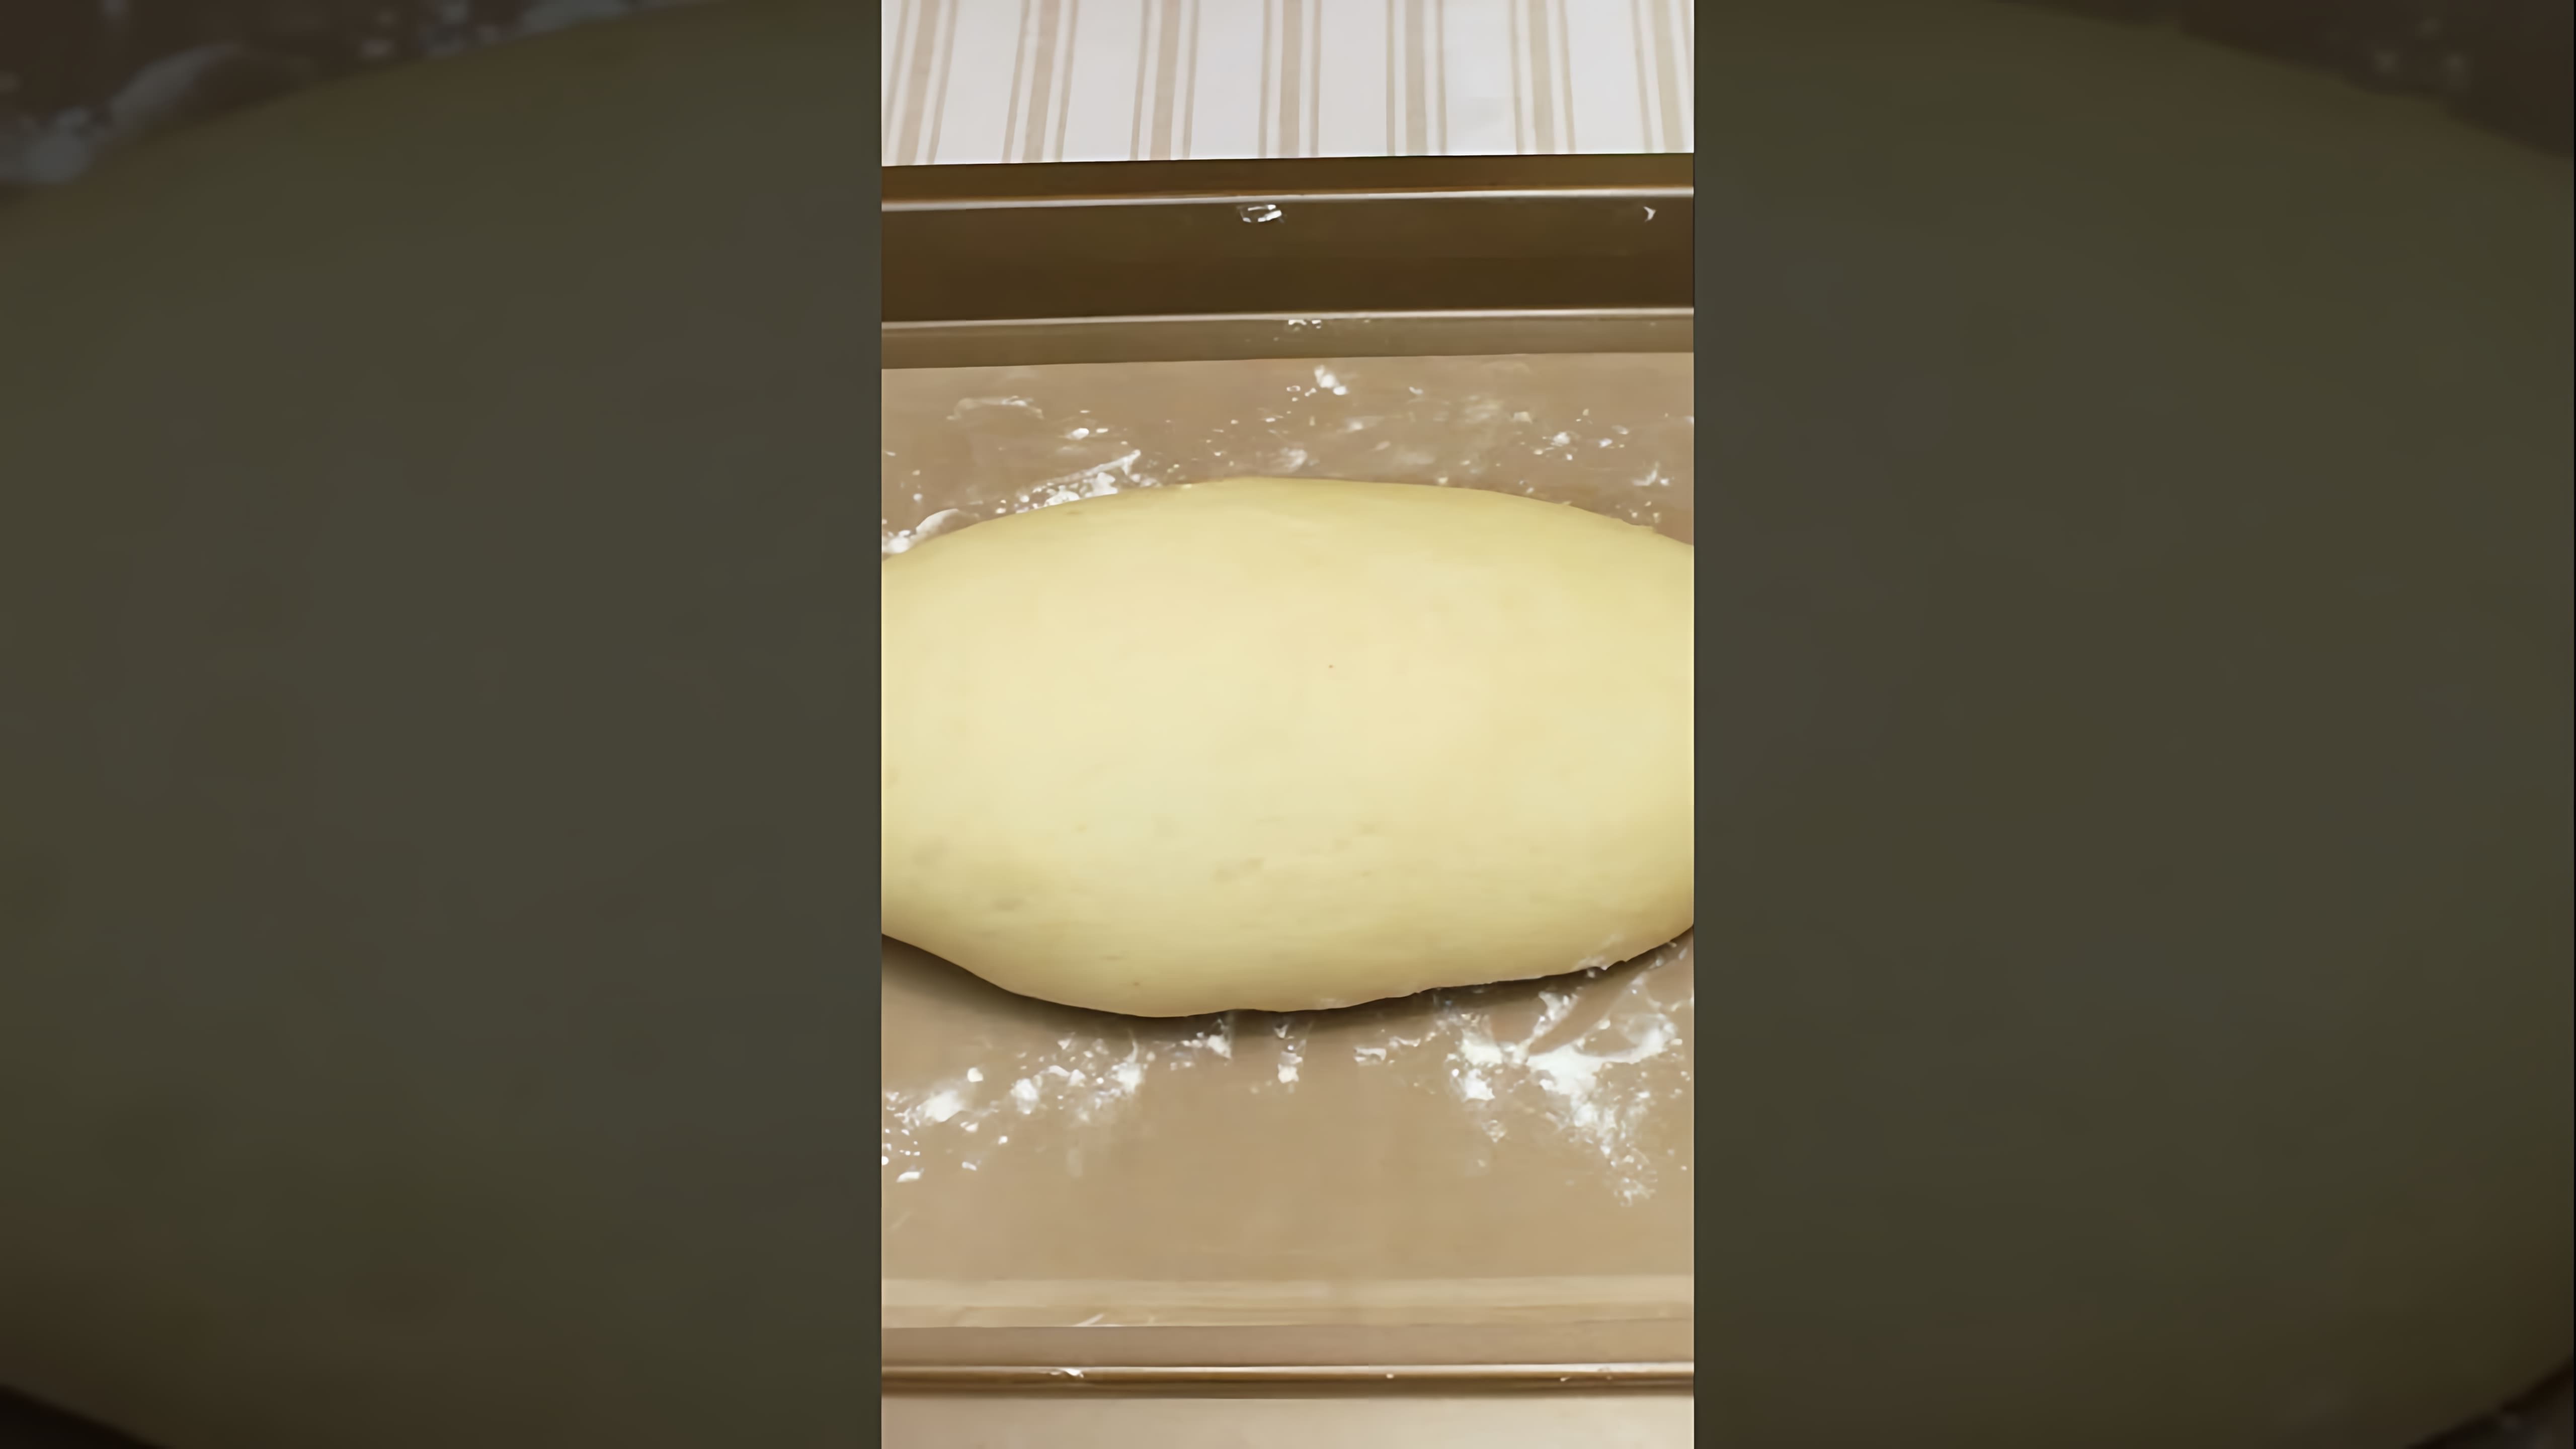 В этом видео-ролике я покажу, как приготовить домашний батон в духовке